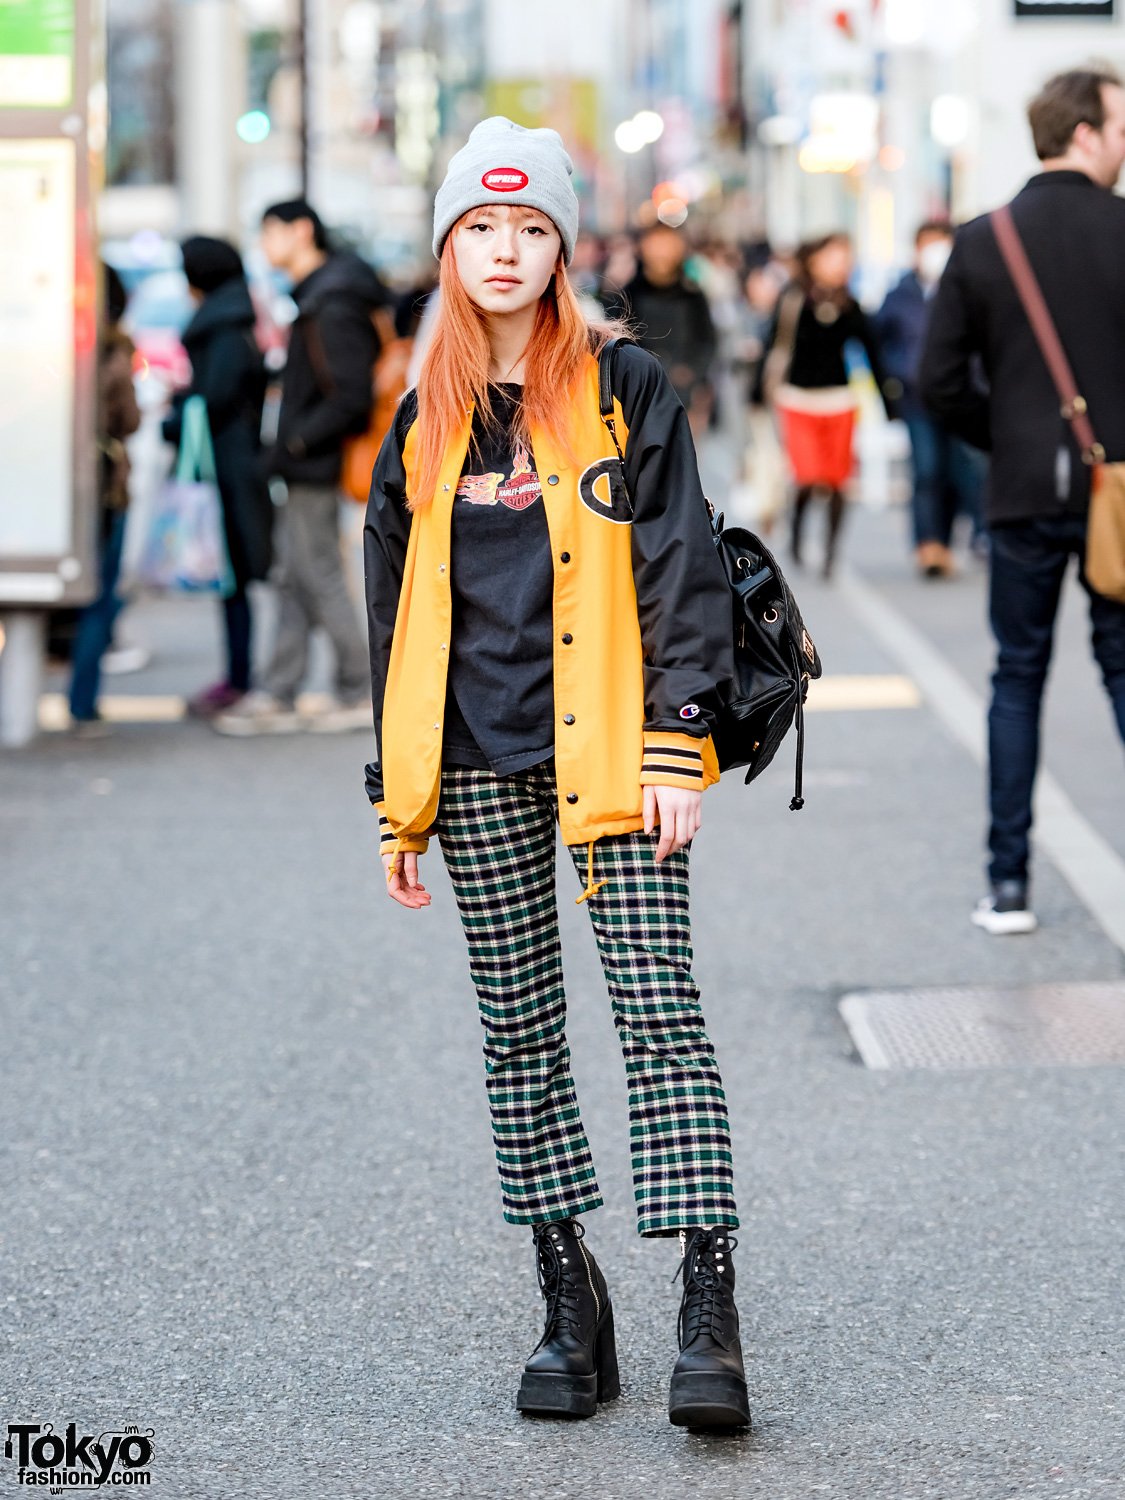 skateboard – Tokyo Fashion